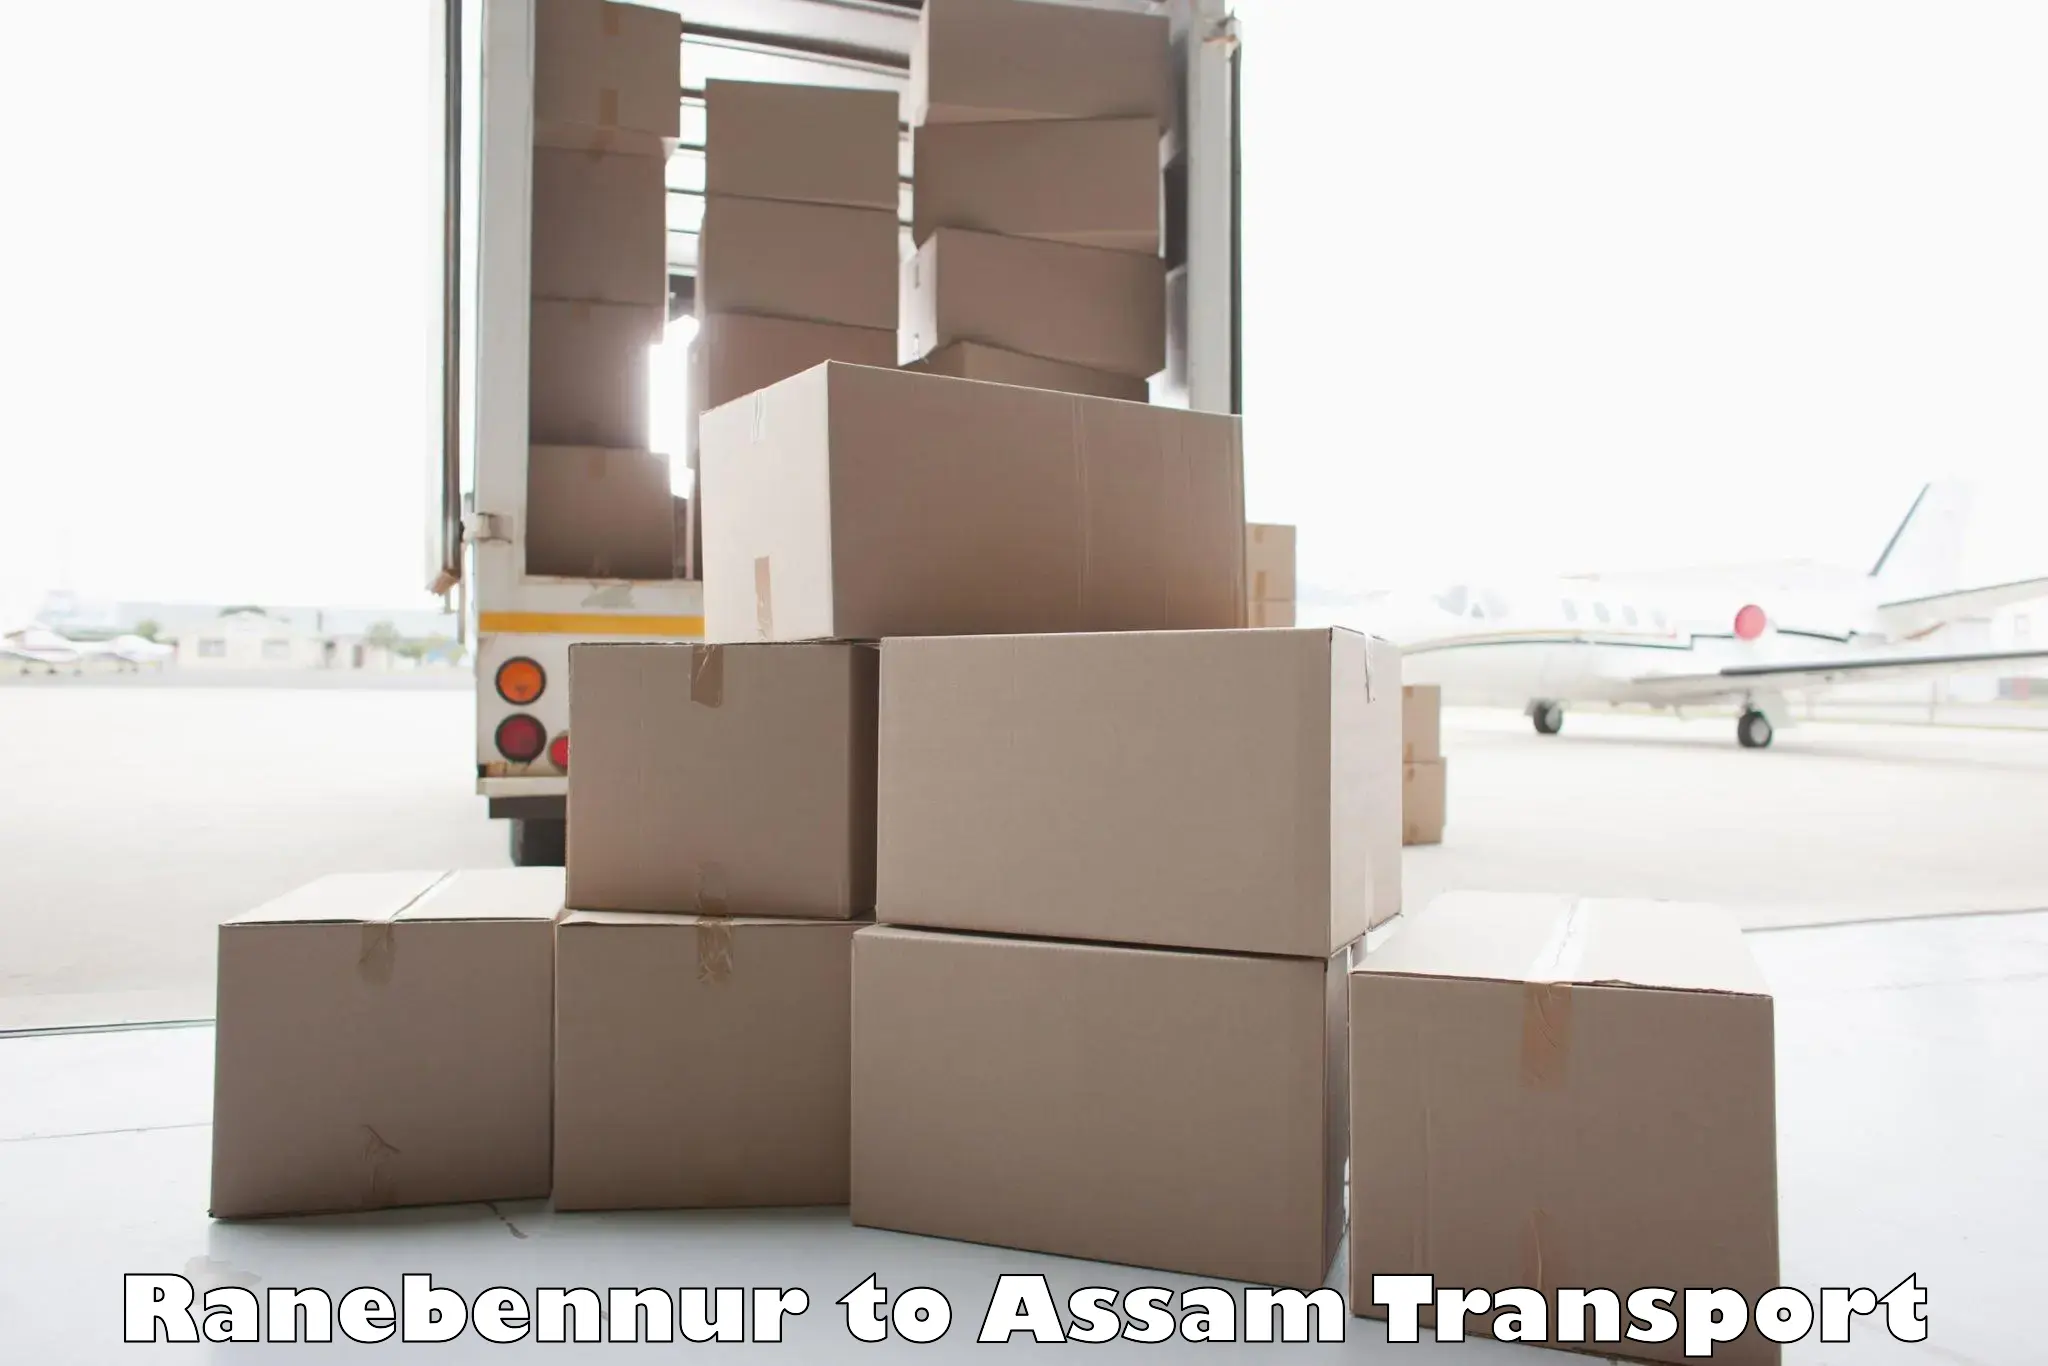 Land transport services Ranebennur to Assam